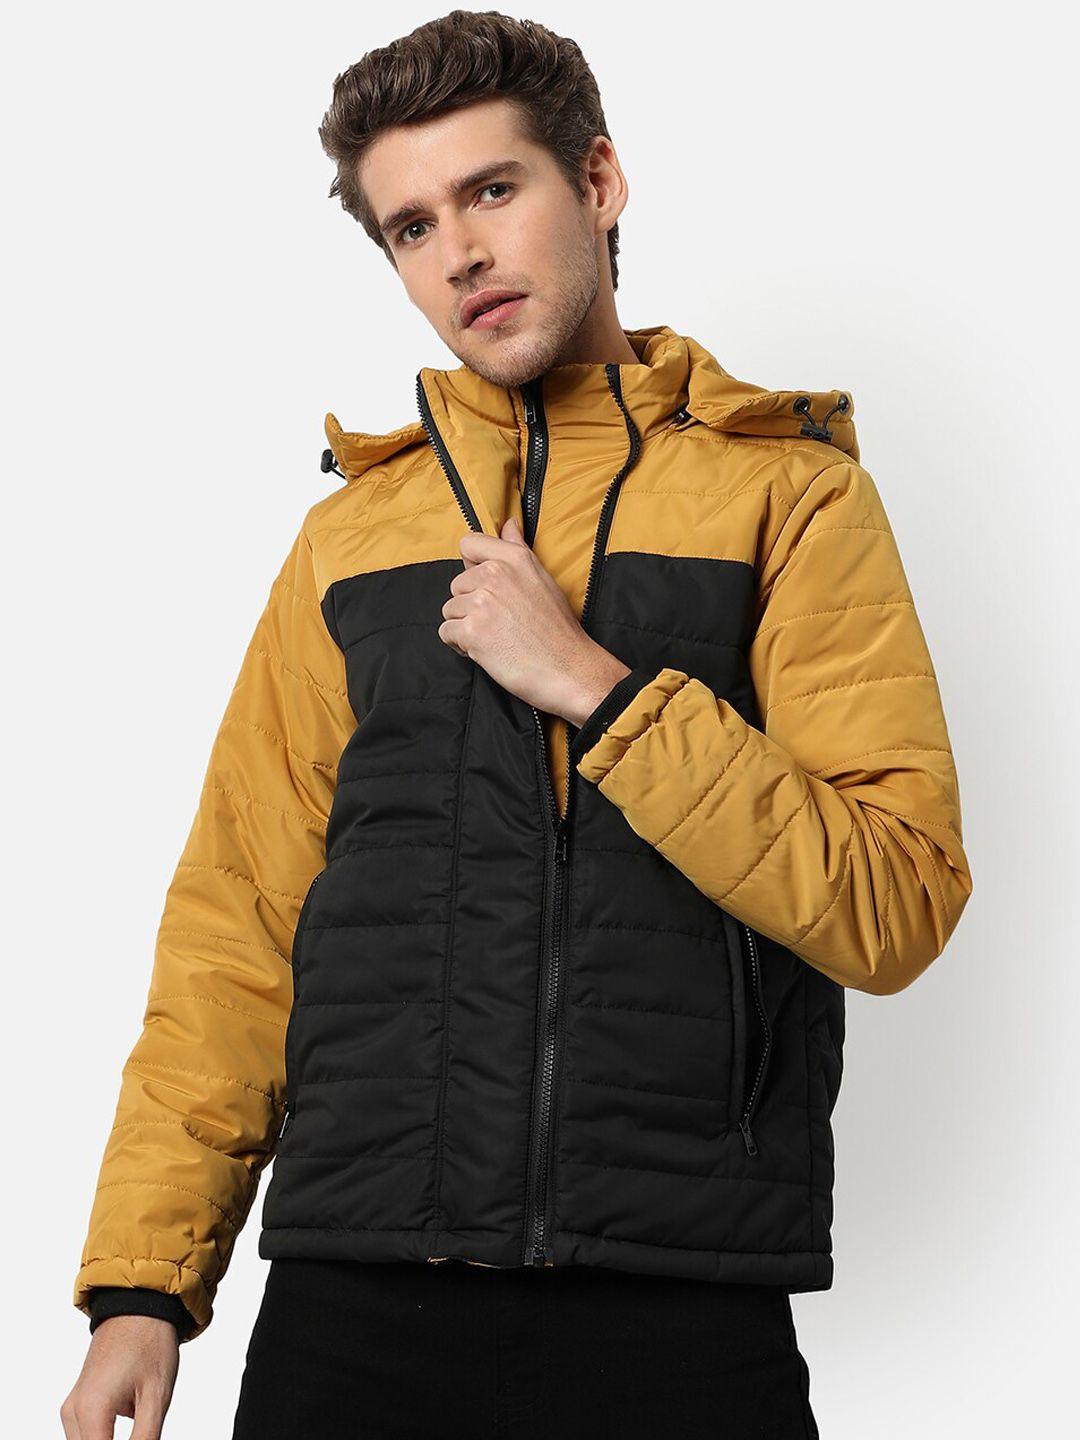 campus-sutra-men-mustard-colourblocked-padded-jacket